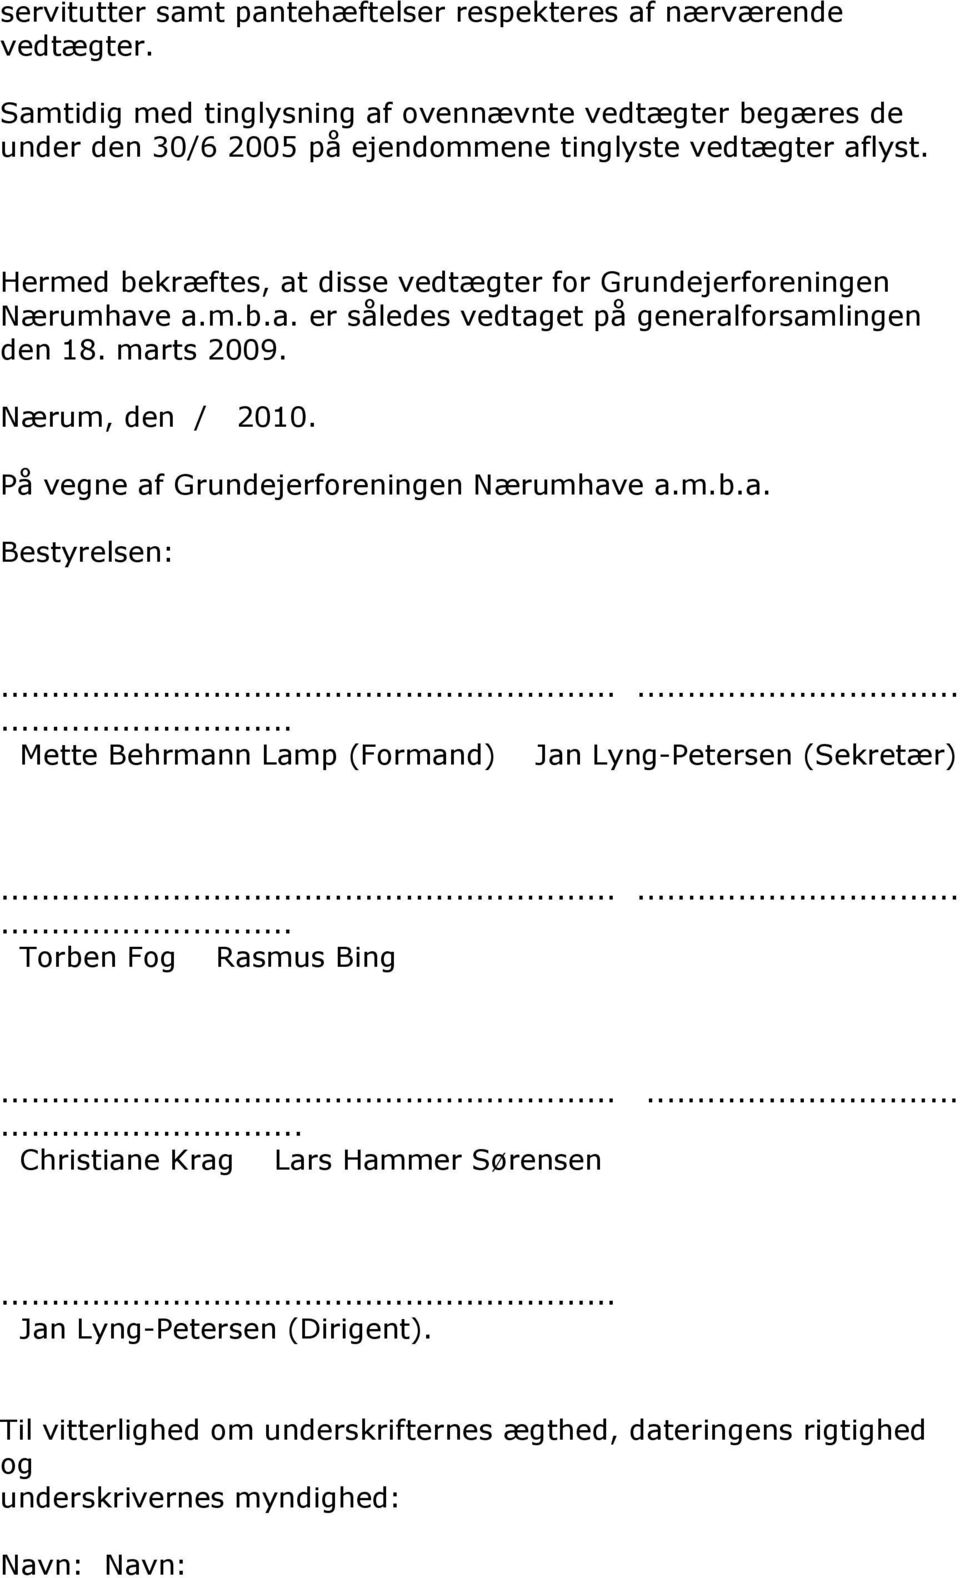 Hermed bekræftes, at disse vedtægter for Grundejerforeningen Nærumhave a.m.b.a. er således vedtaget på generalforsamlingen den 18. marts 2009. Nærum, den / 2010.